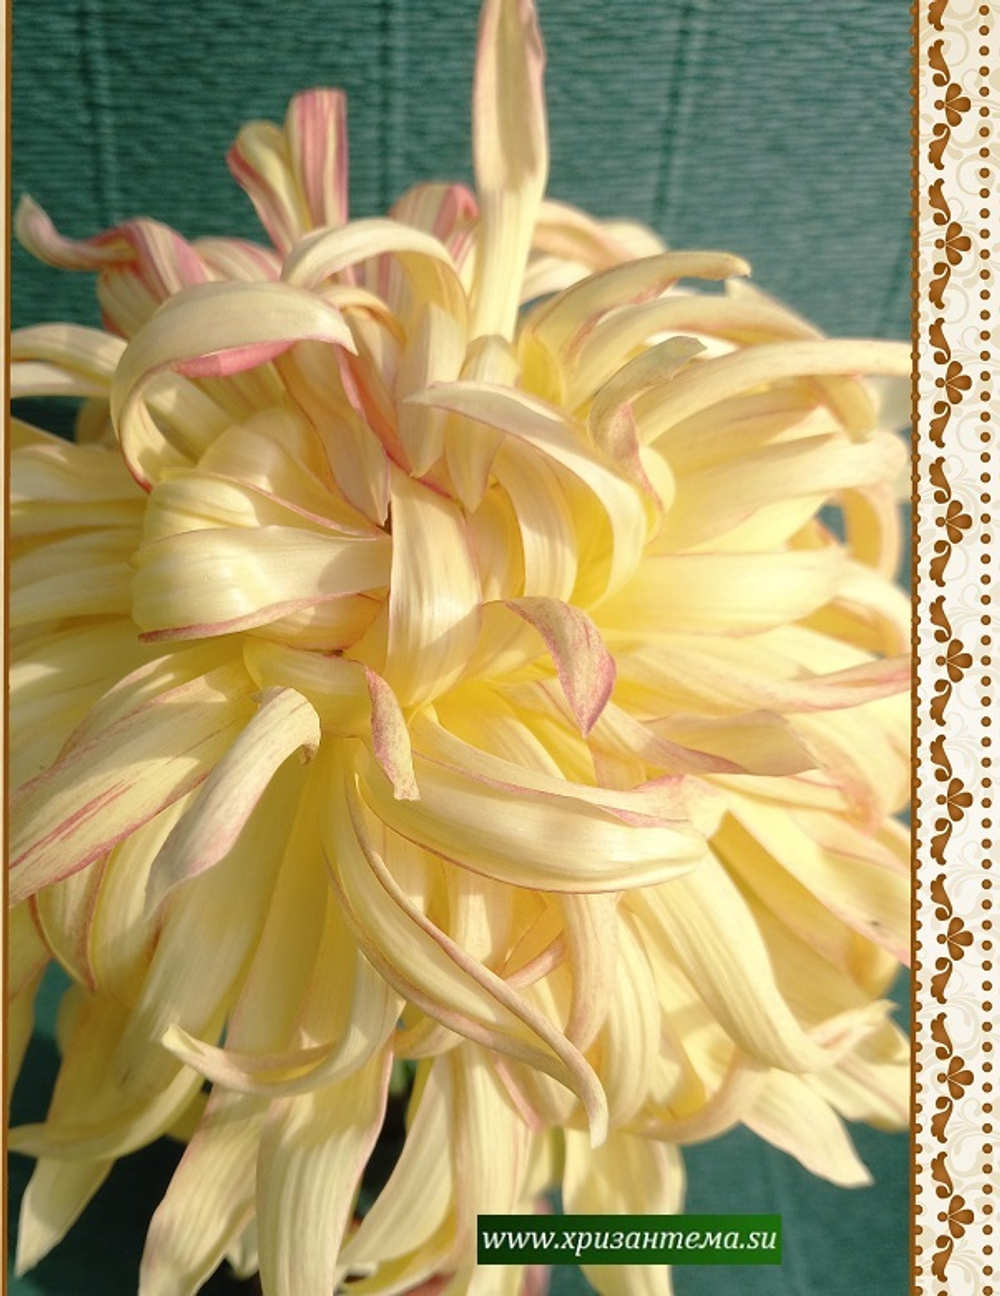 Lancashire Lad  крупноцветковая хризантема ☘  ан 85    (временно нет в наличии)